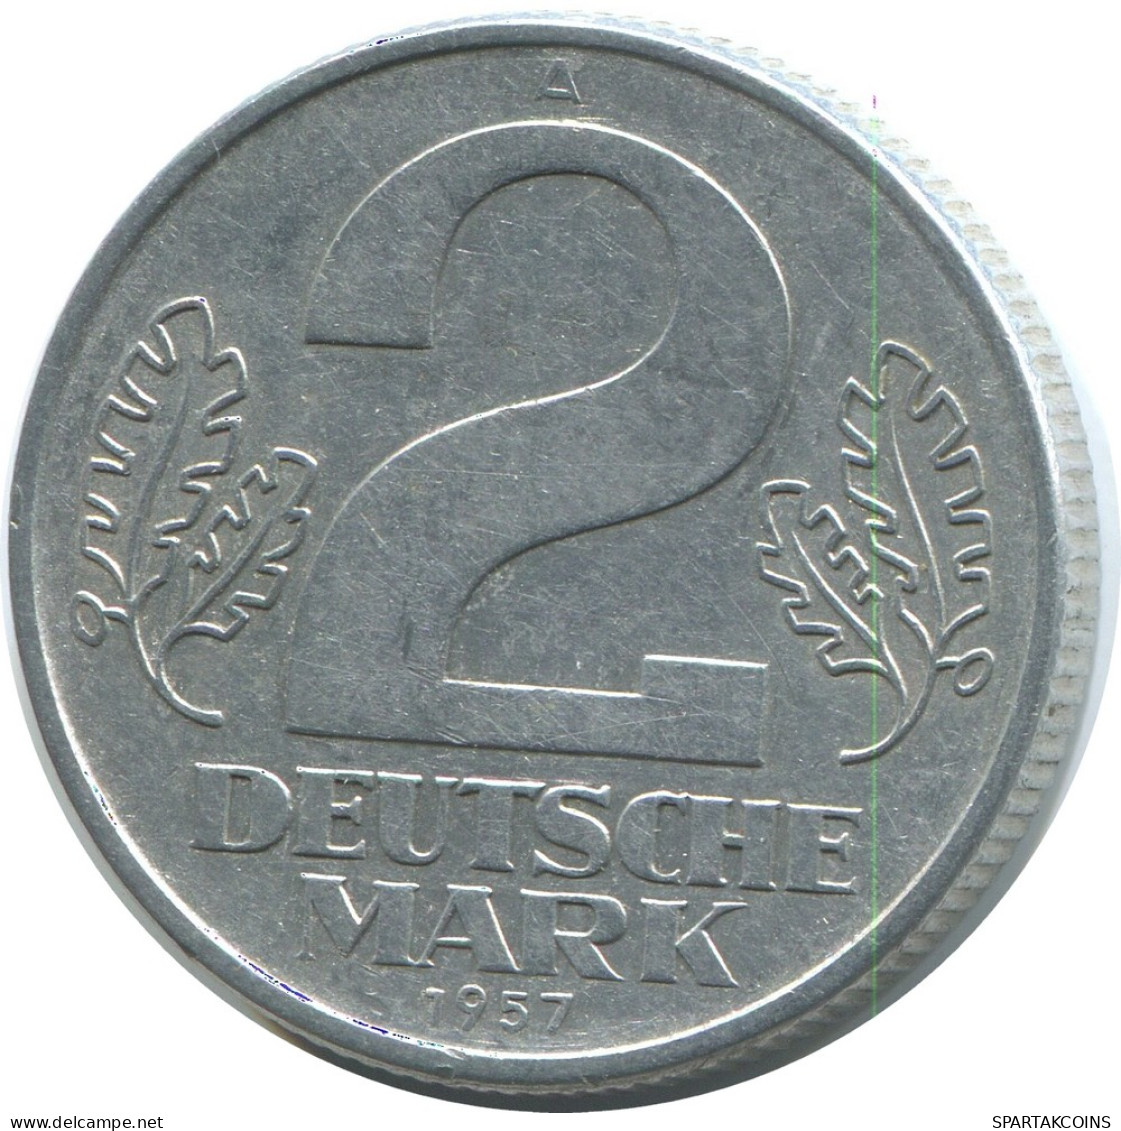 2 DM 1957 A DDR EAST GERMANY Coin #AE126.U - 2 Marcos